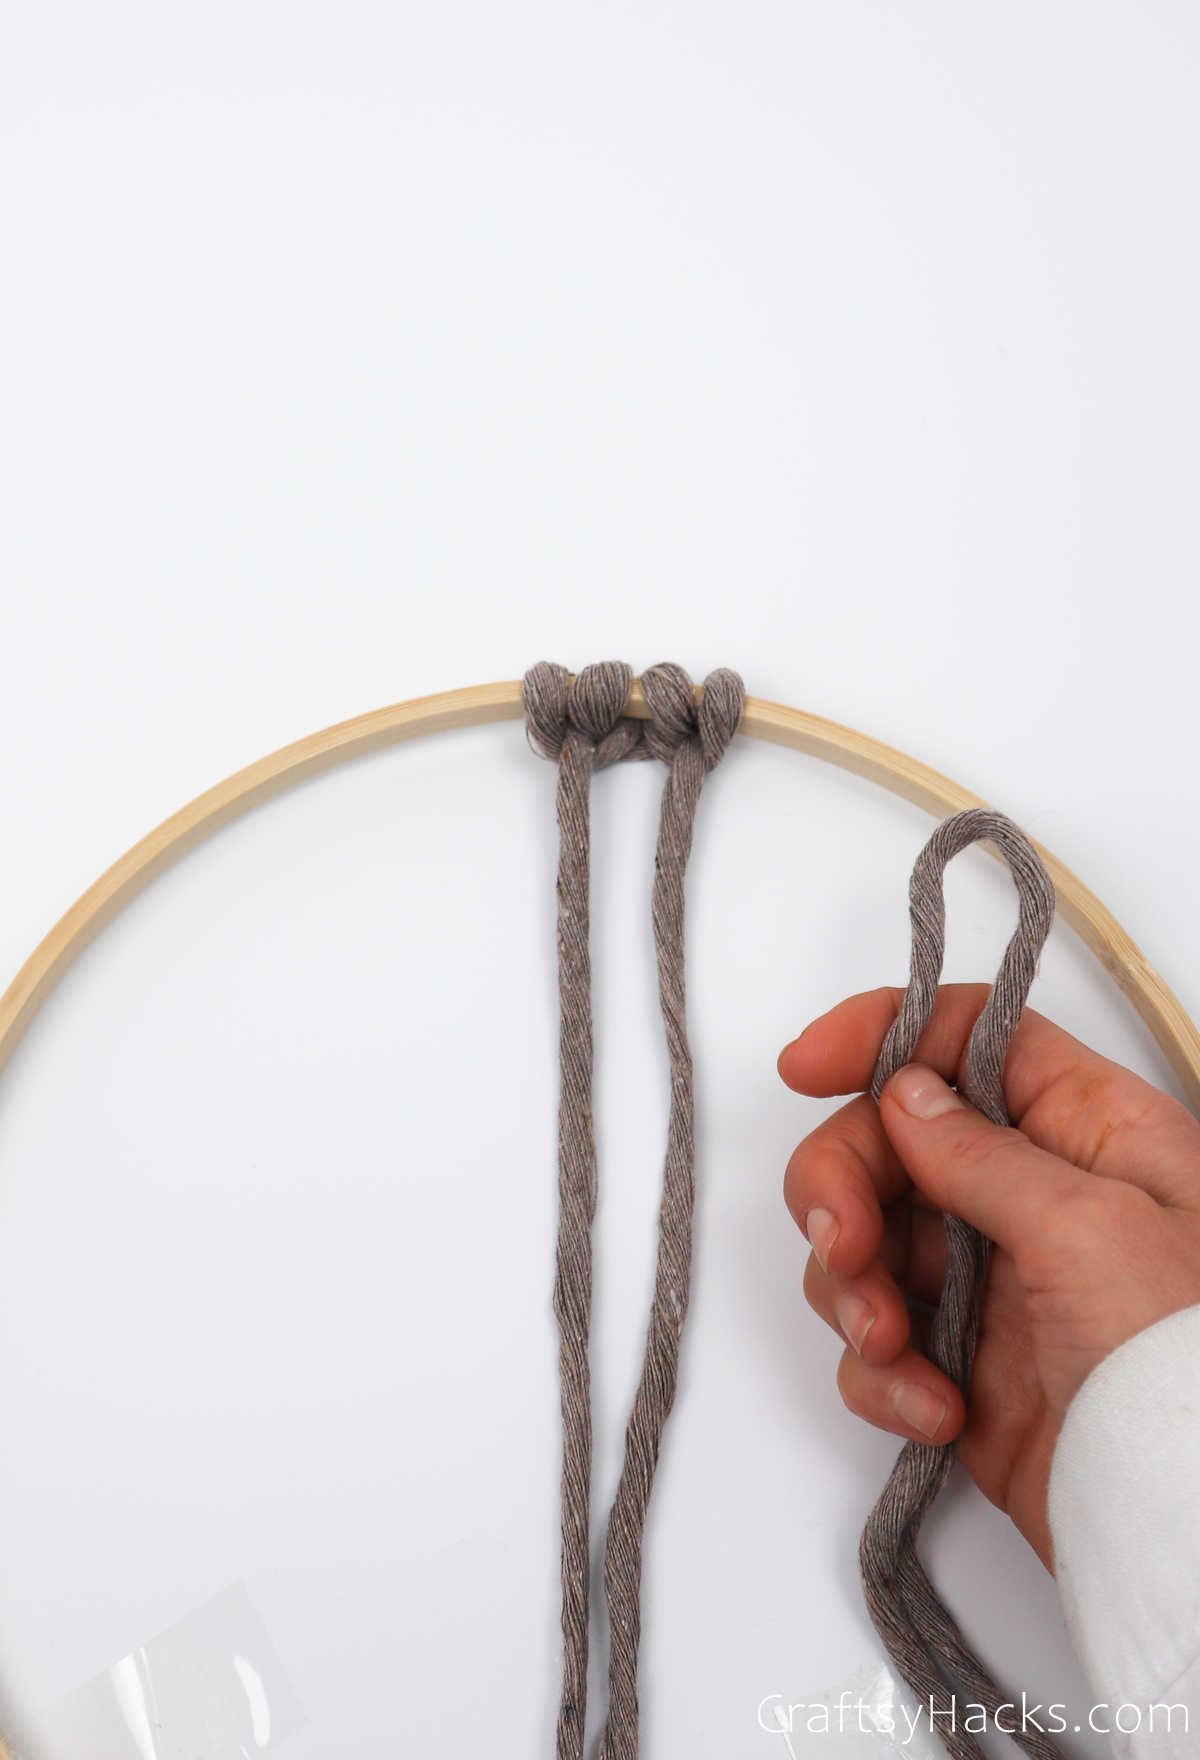 holding loop of string